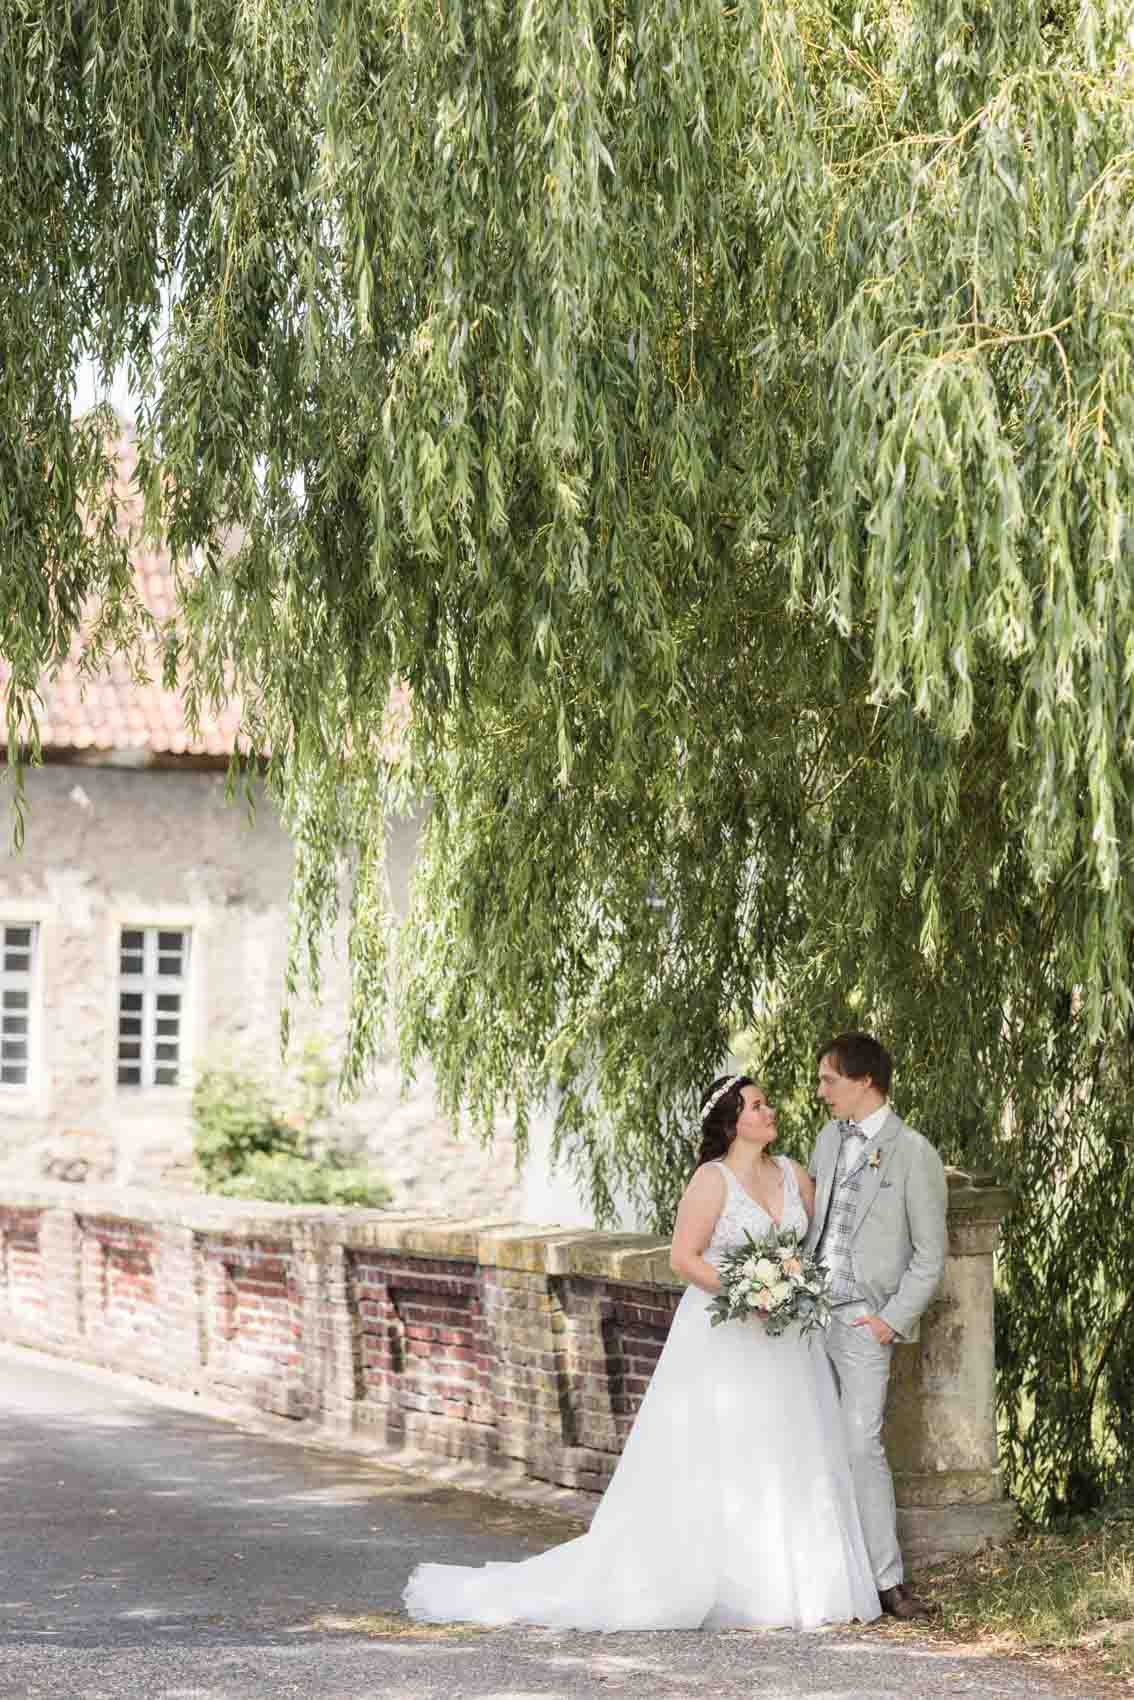 Brautpaar bei Hochzeitsfotoshooting auf Brücke hinter Schloss Buldern in Dülmen